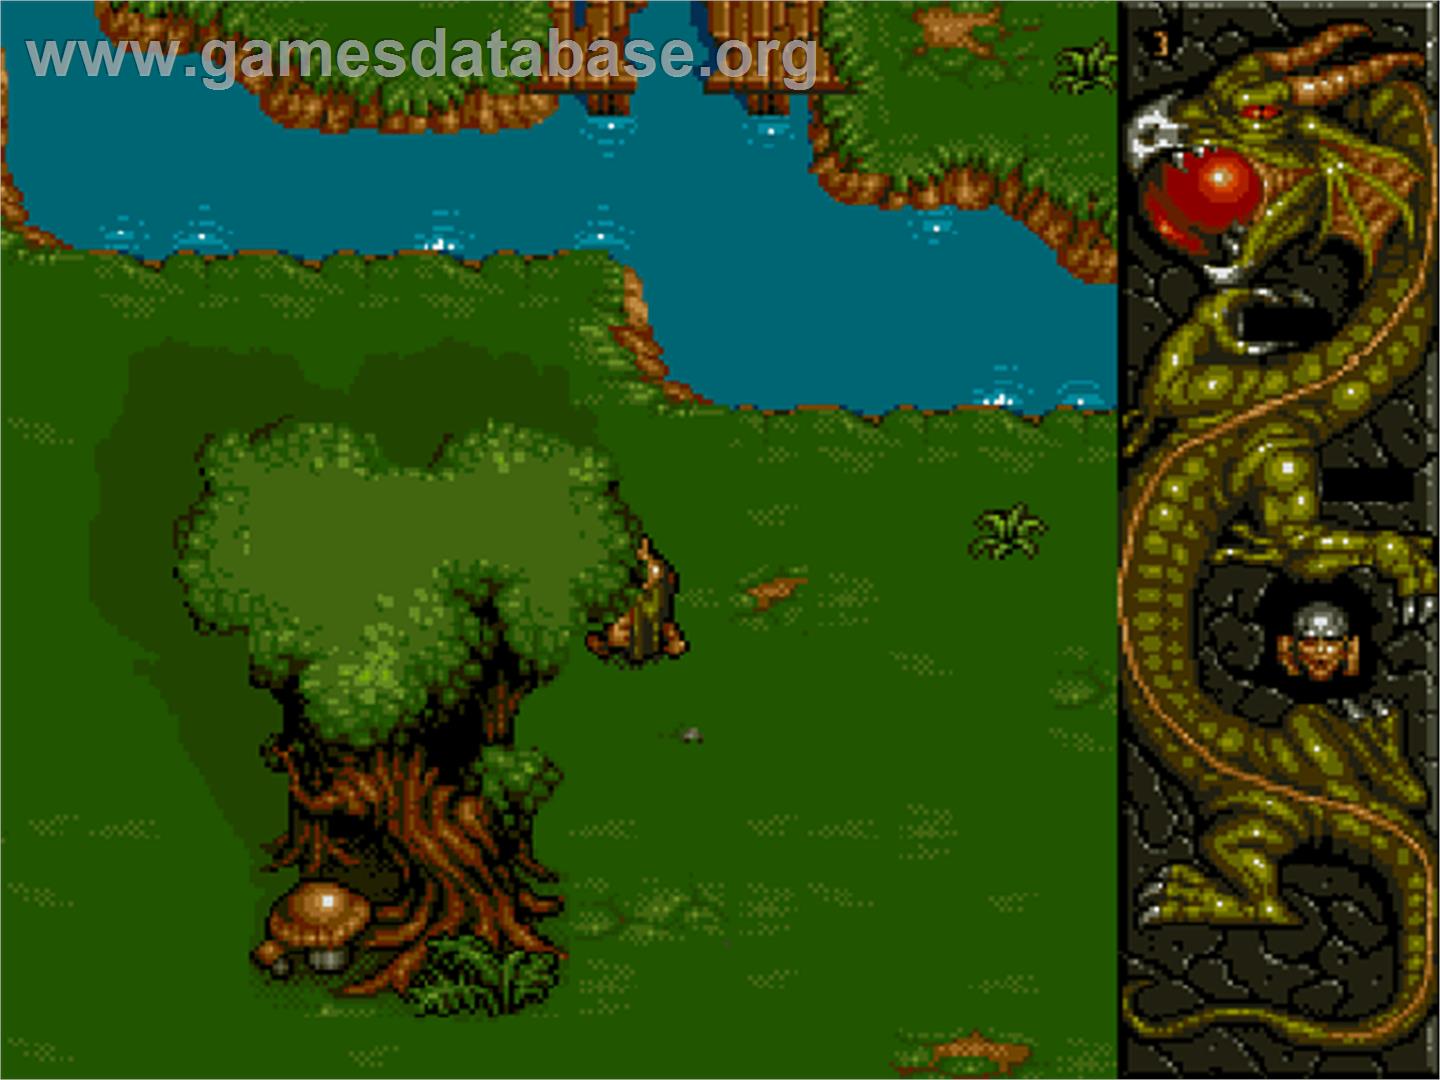 Dragonstone - Commodore Amiga CD32 - Artwork - In Game